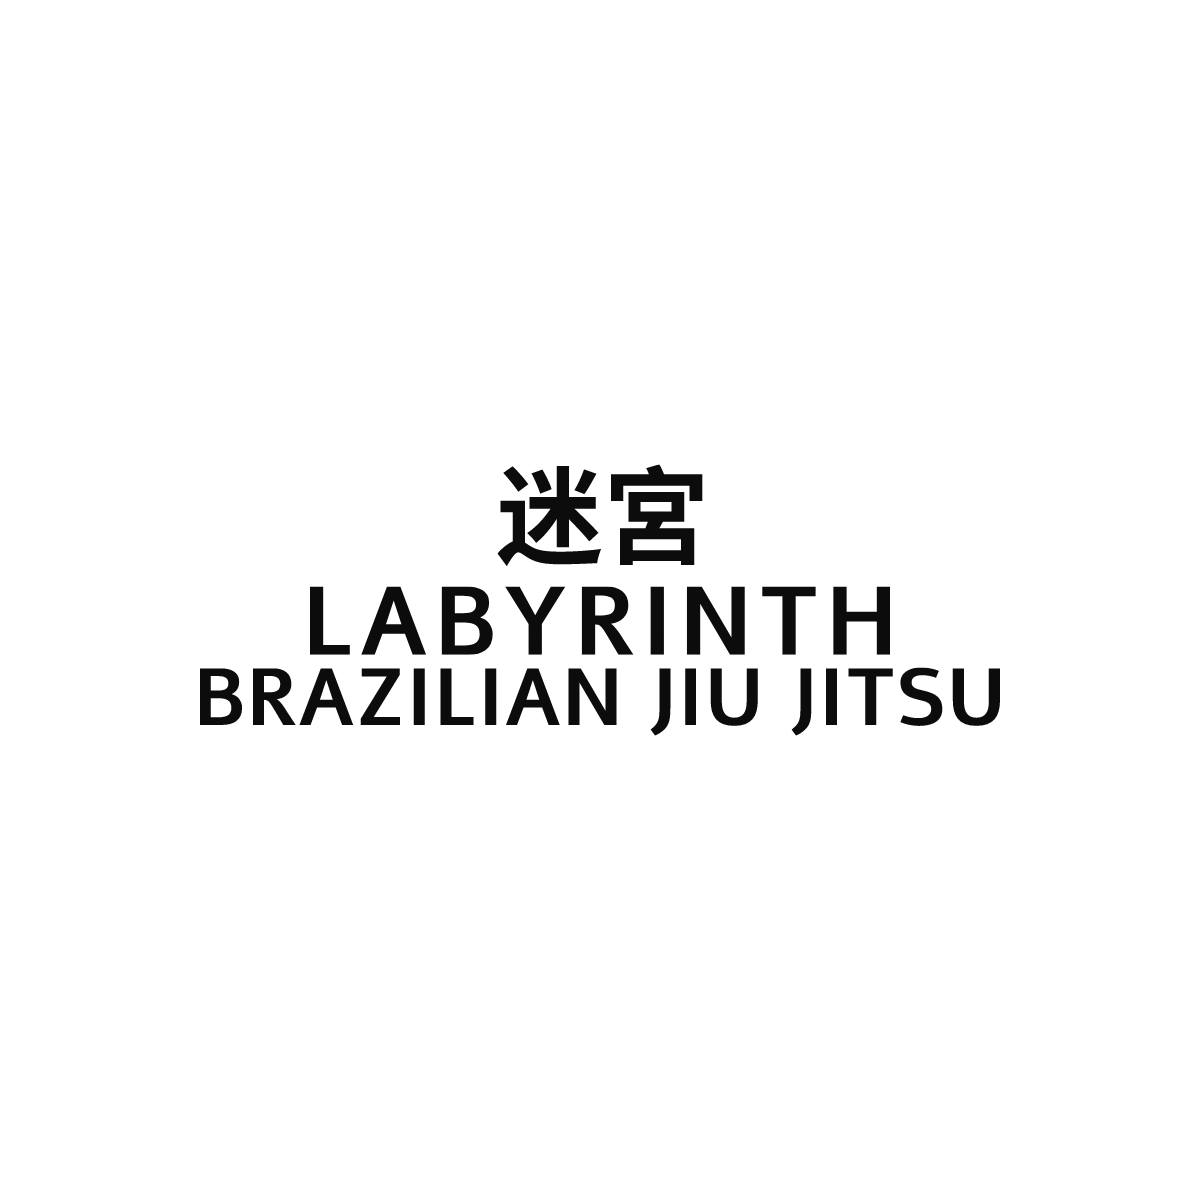 Labyrinth Brazilian Jiu Jitsu